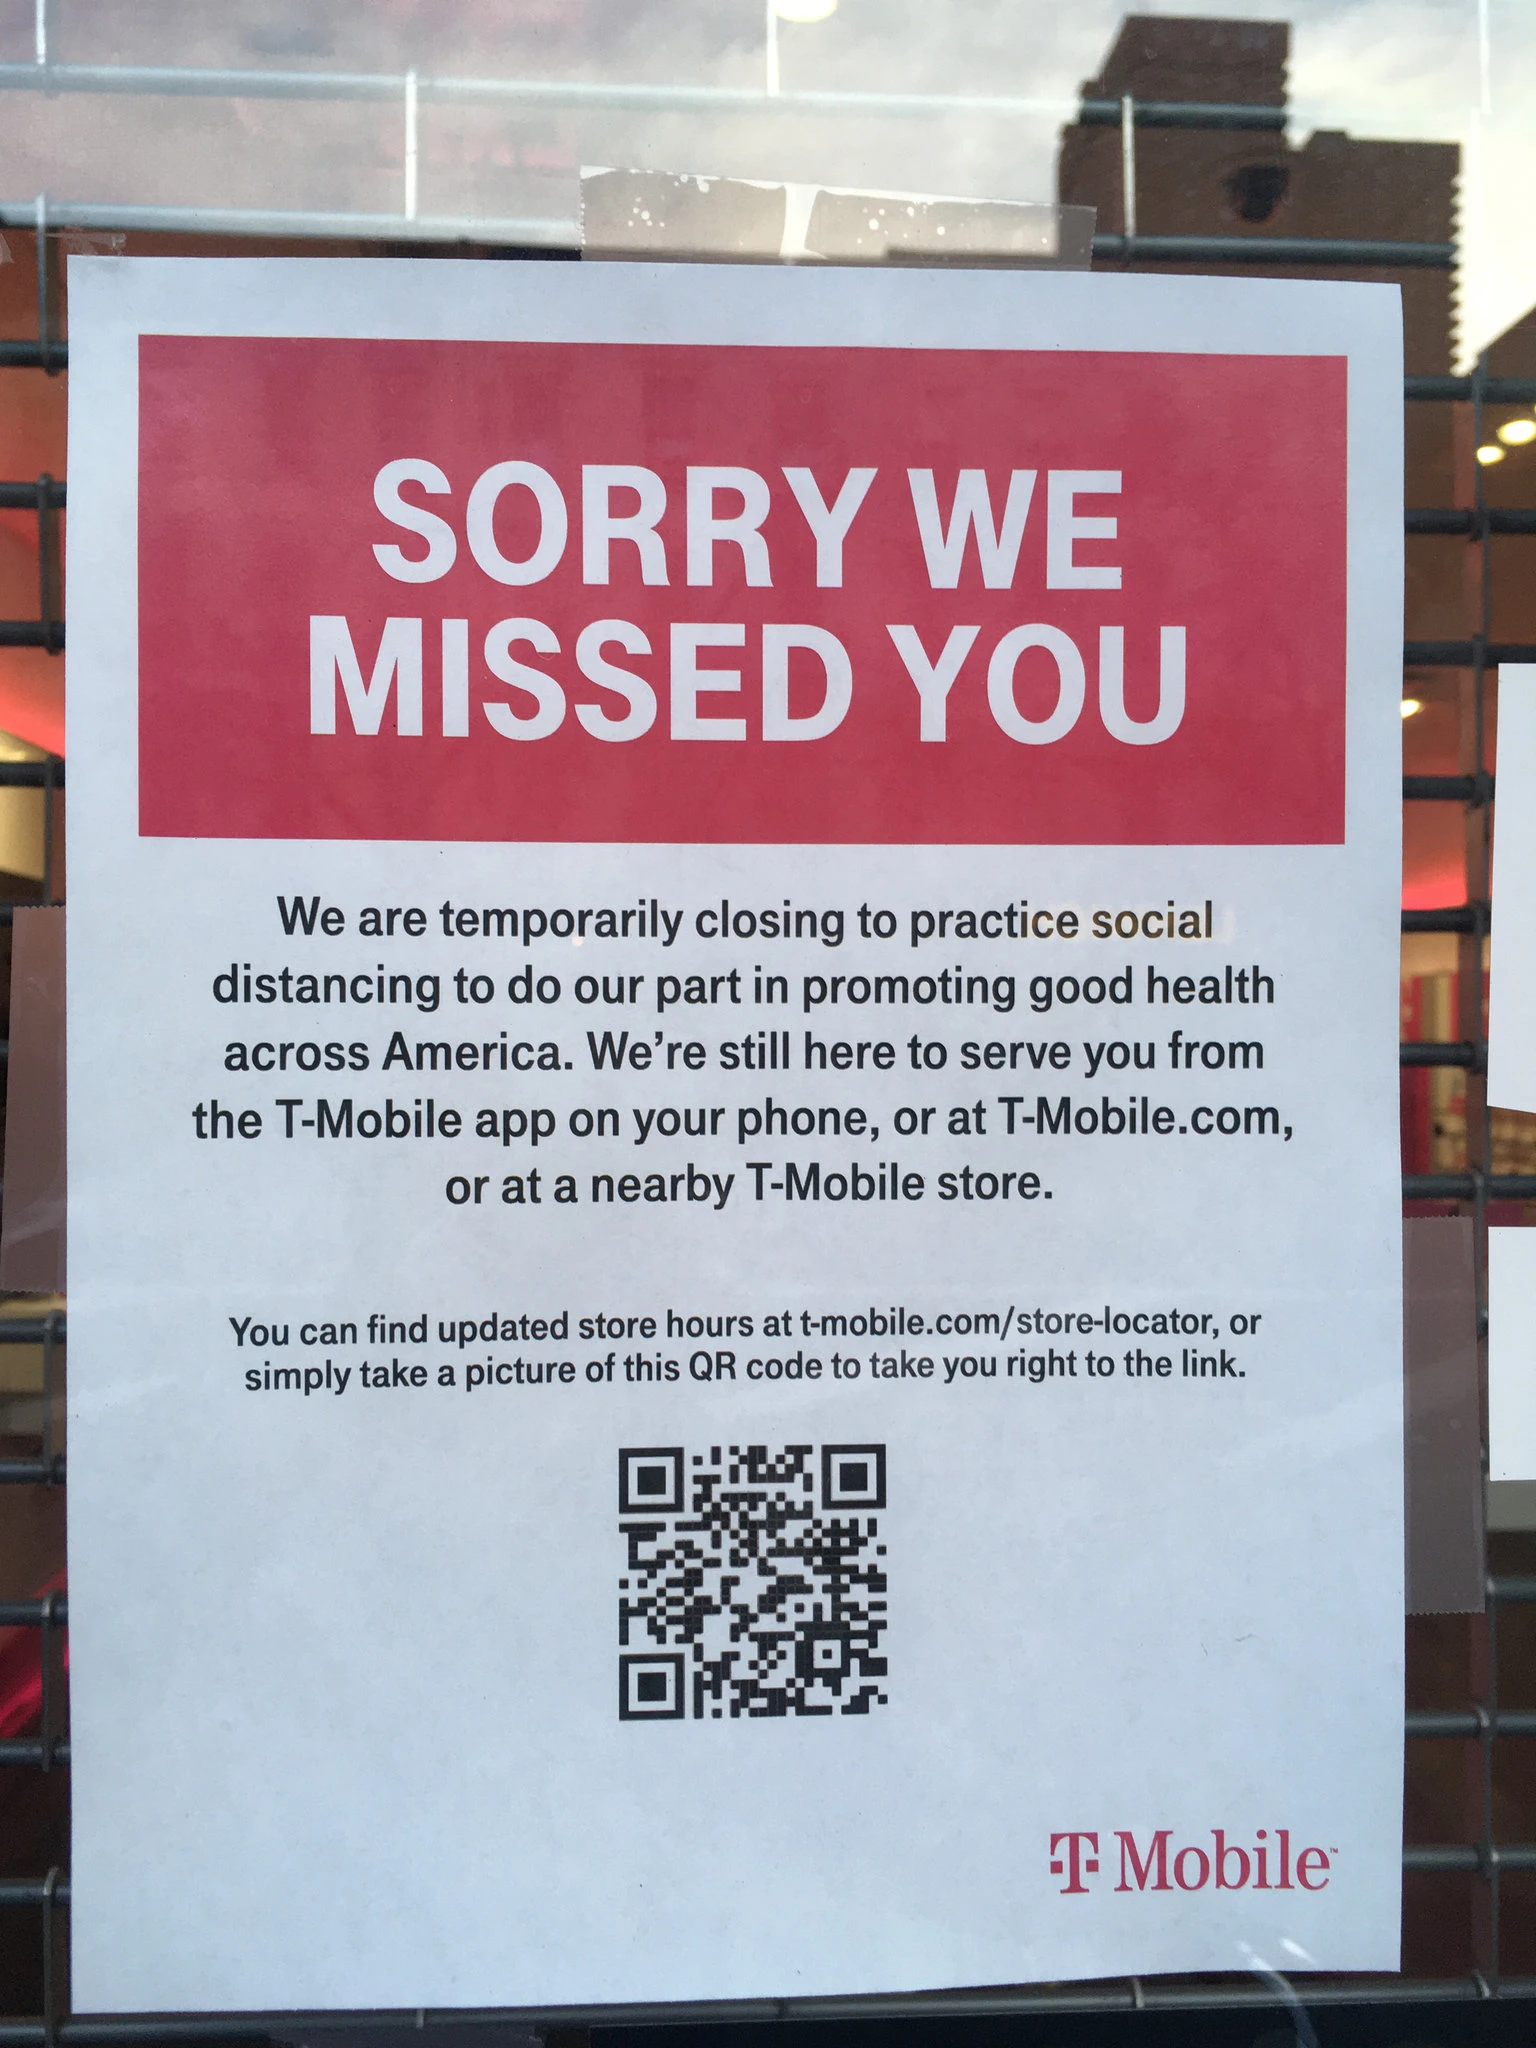 Κοροναϊός : Τα κλειστά καταστήματα της ΝΥ καλούν τους πελάτες να μείνουν μέσα